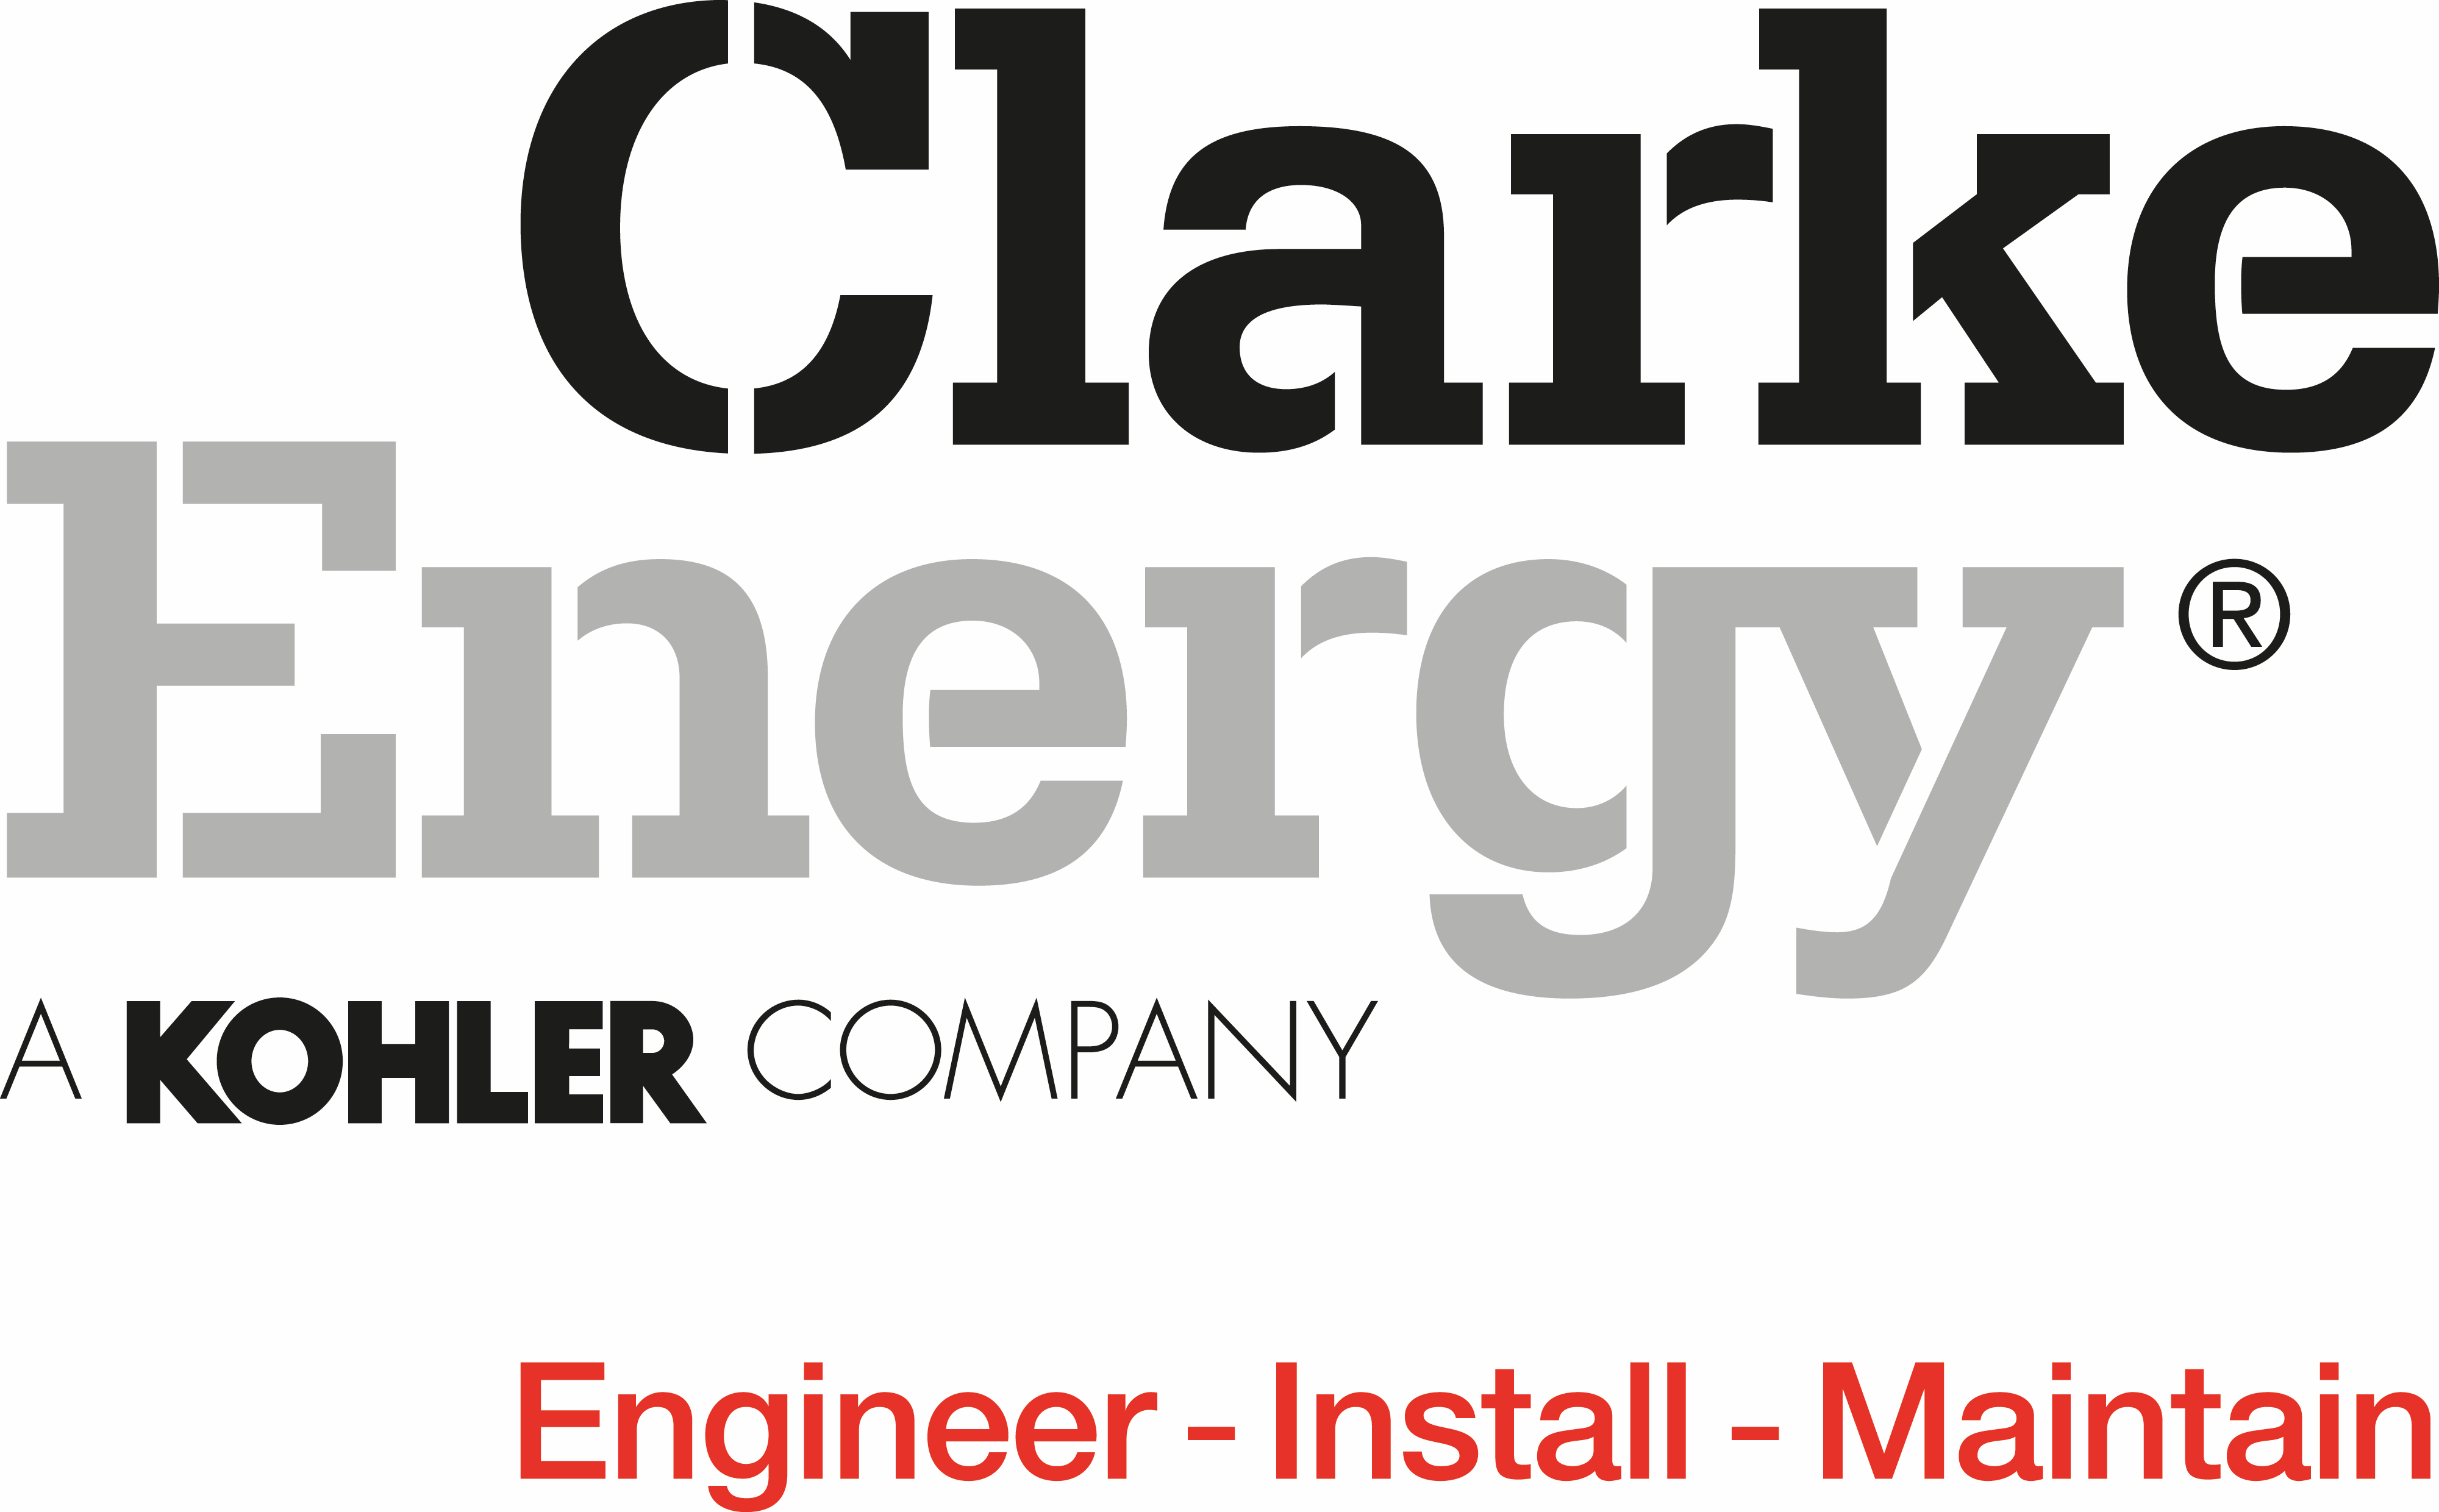 logo for Clarke Energy Ltd